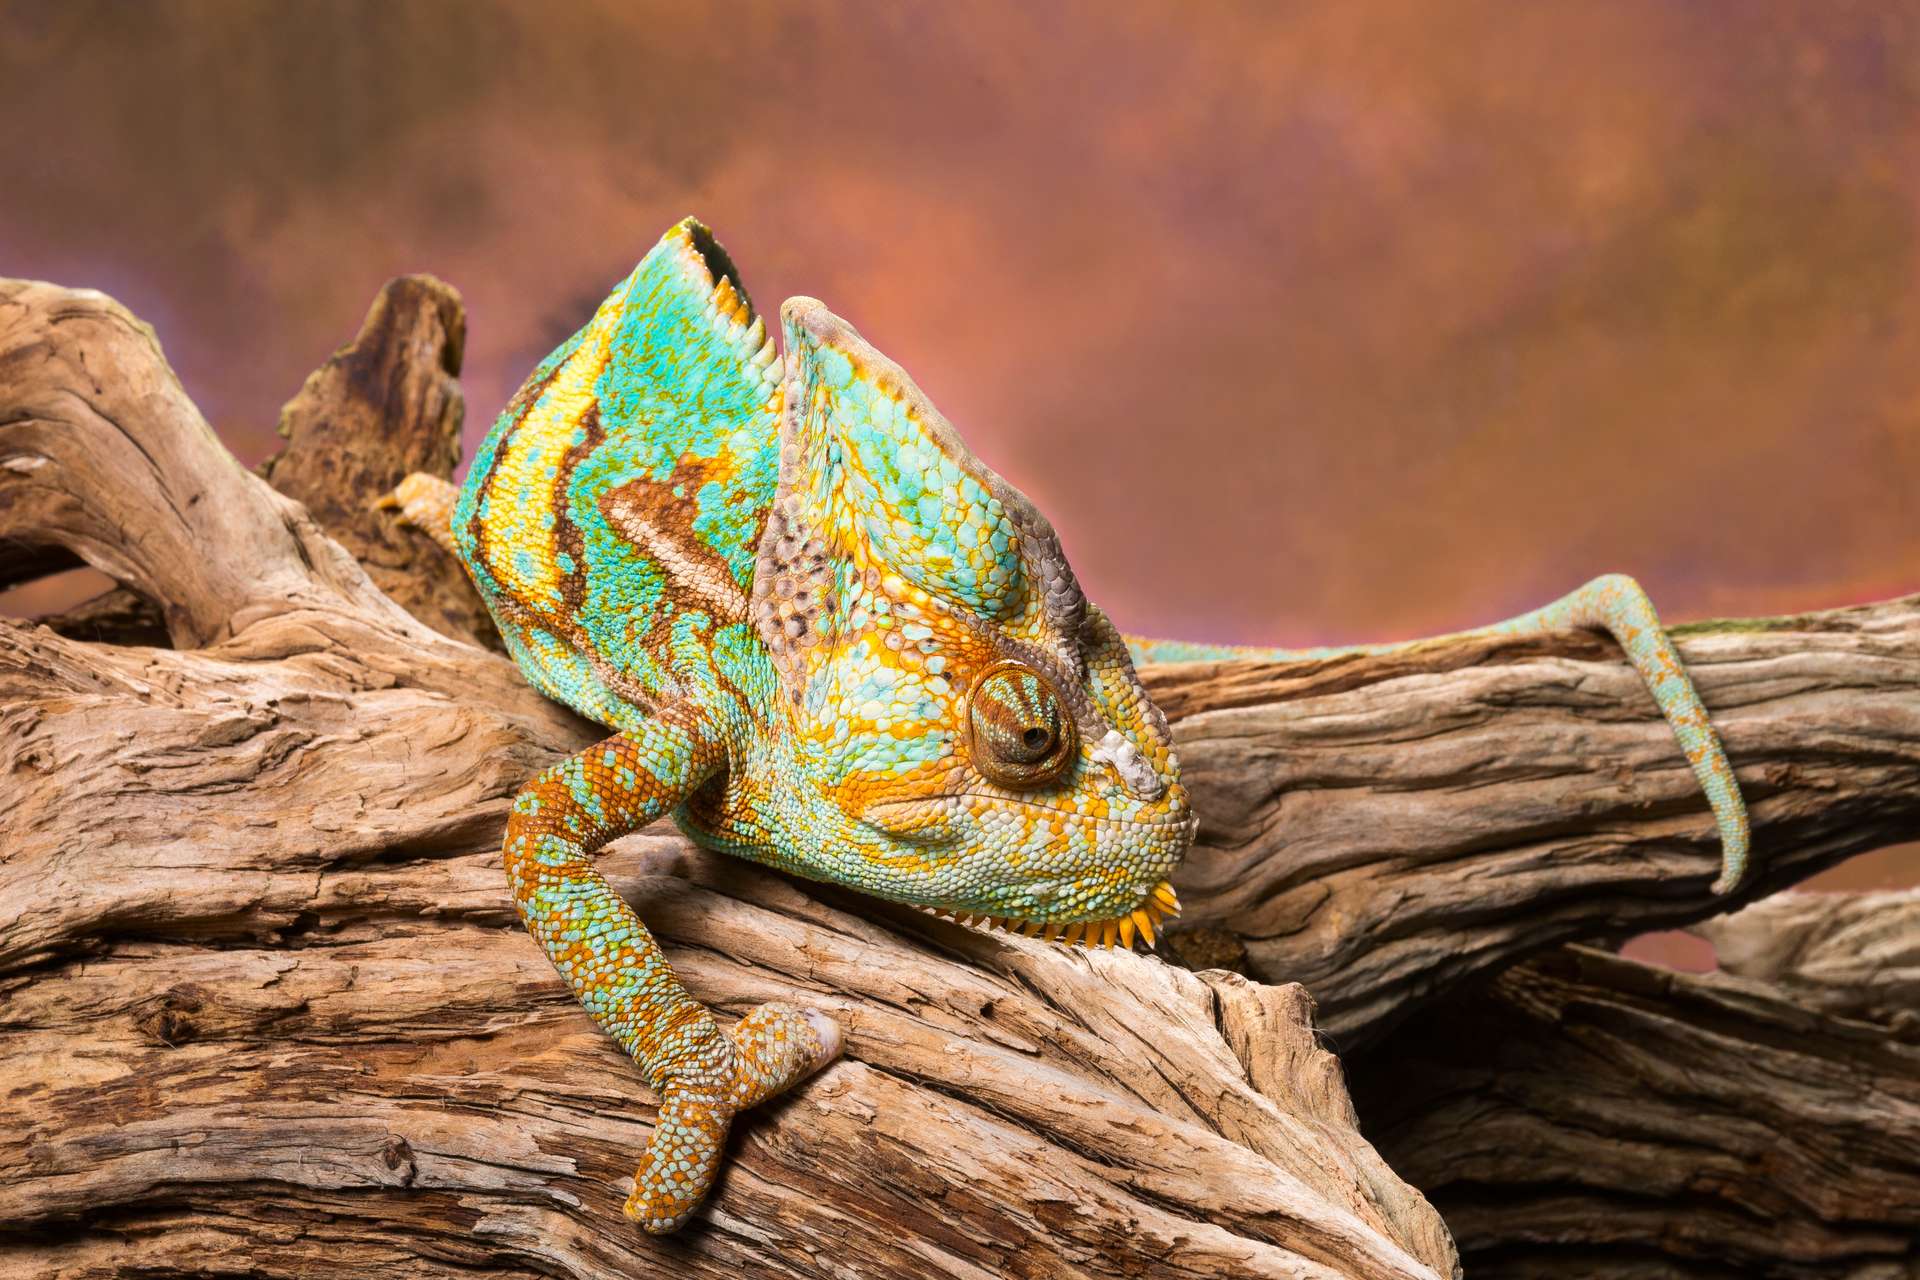 Images exceptionnelles d’une caméléon qui s'illumine de toutes les couleurs avant de s'éteindre